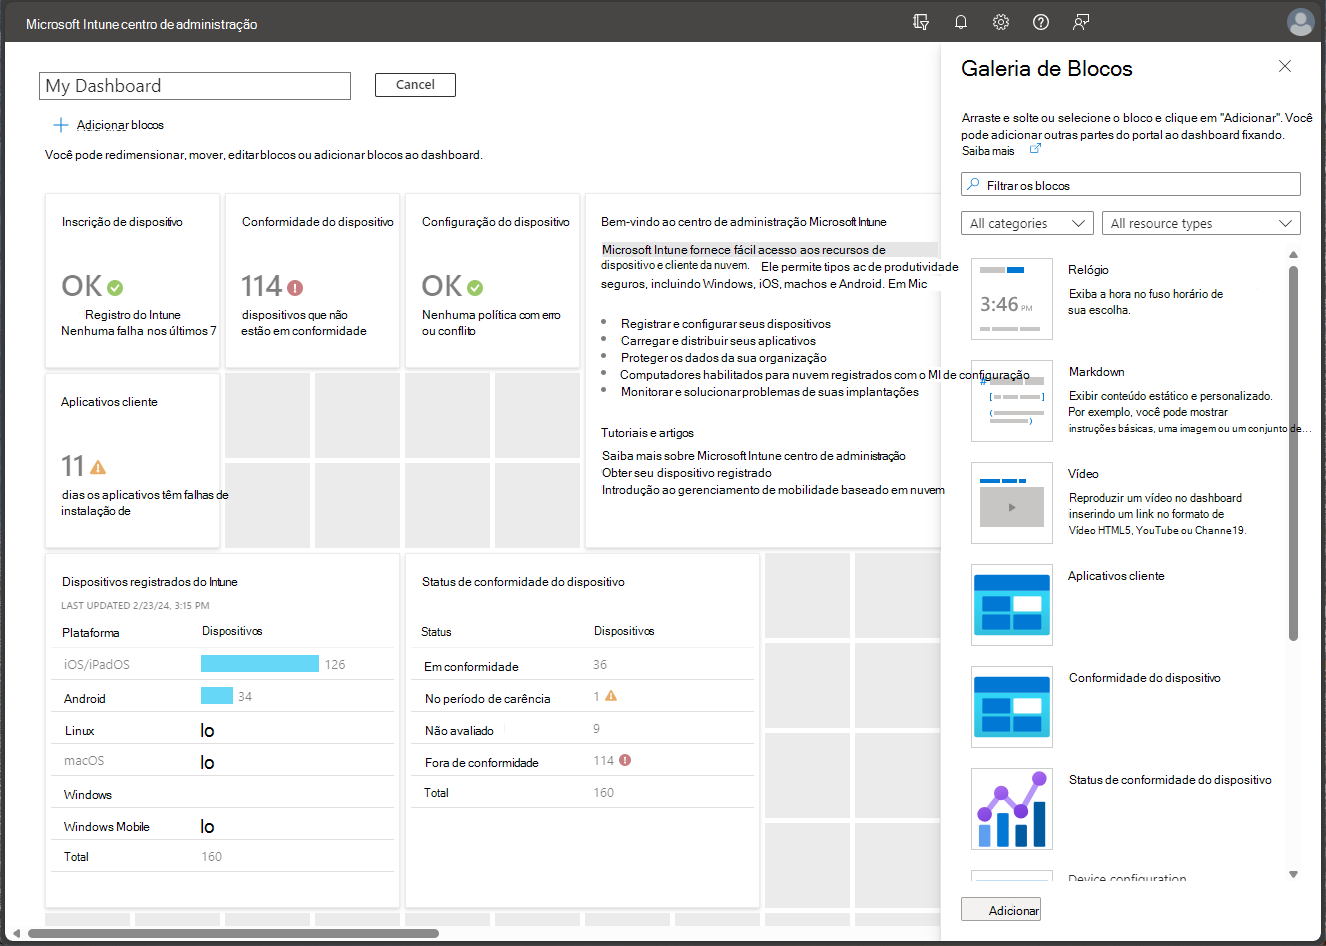 Captura de tela do painel no Centro de Administração do Microsoft Endpoint Manager